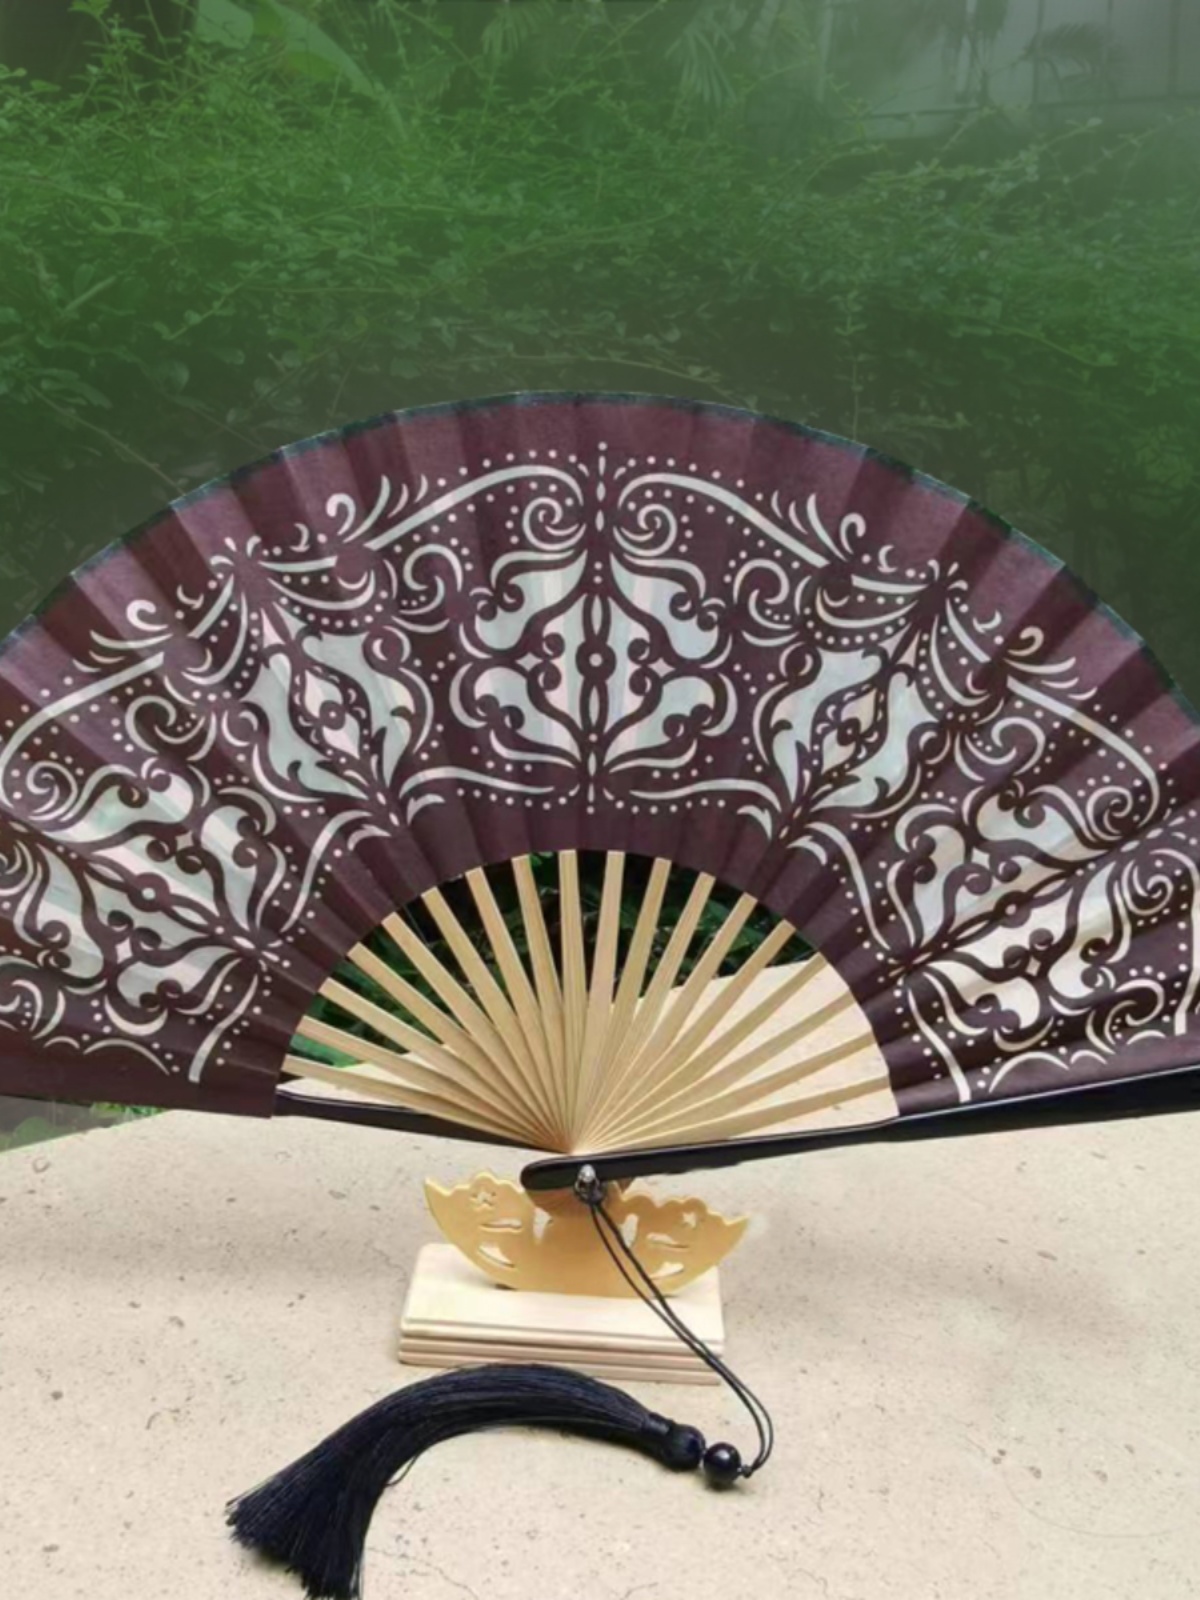 粉色镂空绿色扇折叠扇子中国风礼品剪纸工艺折扇古风旗袍扇